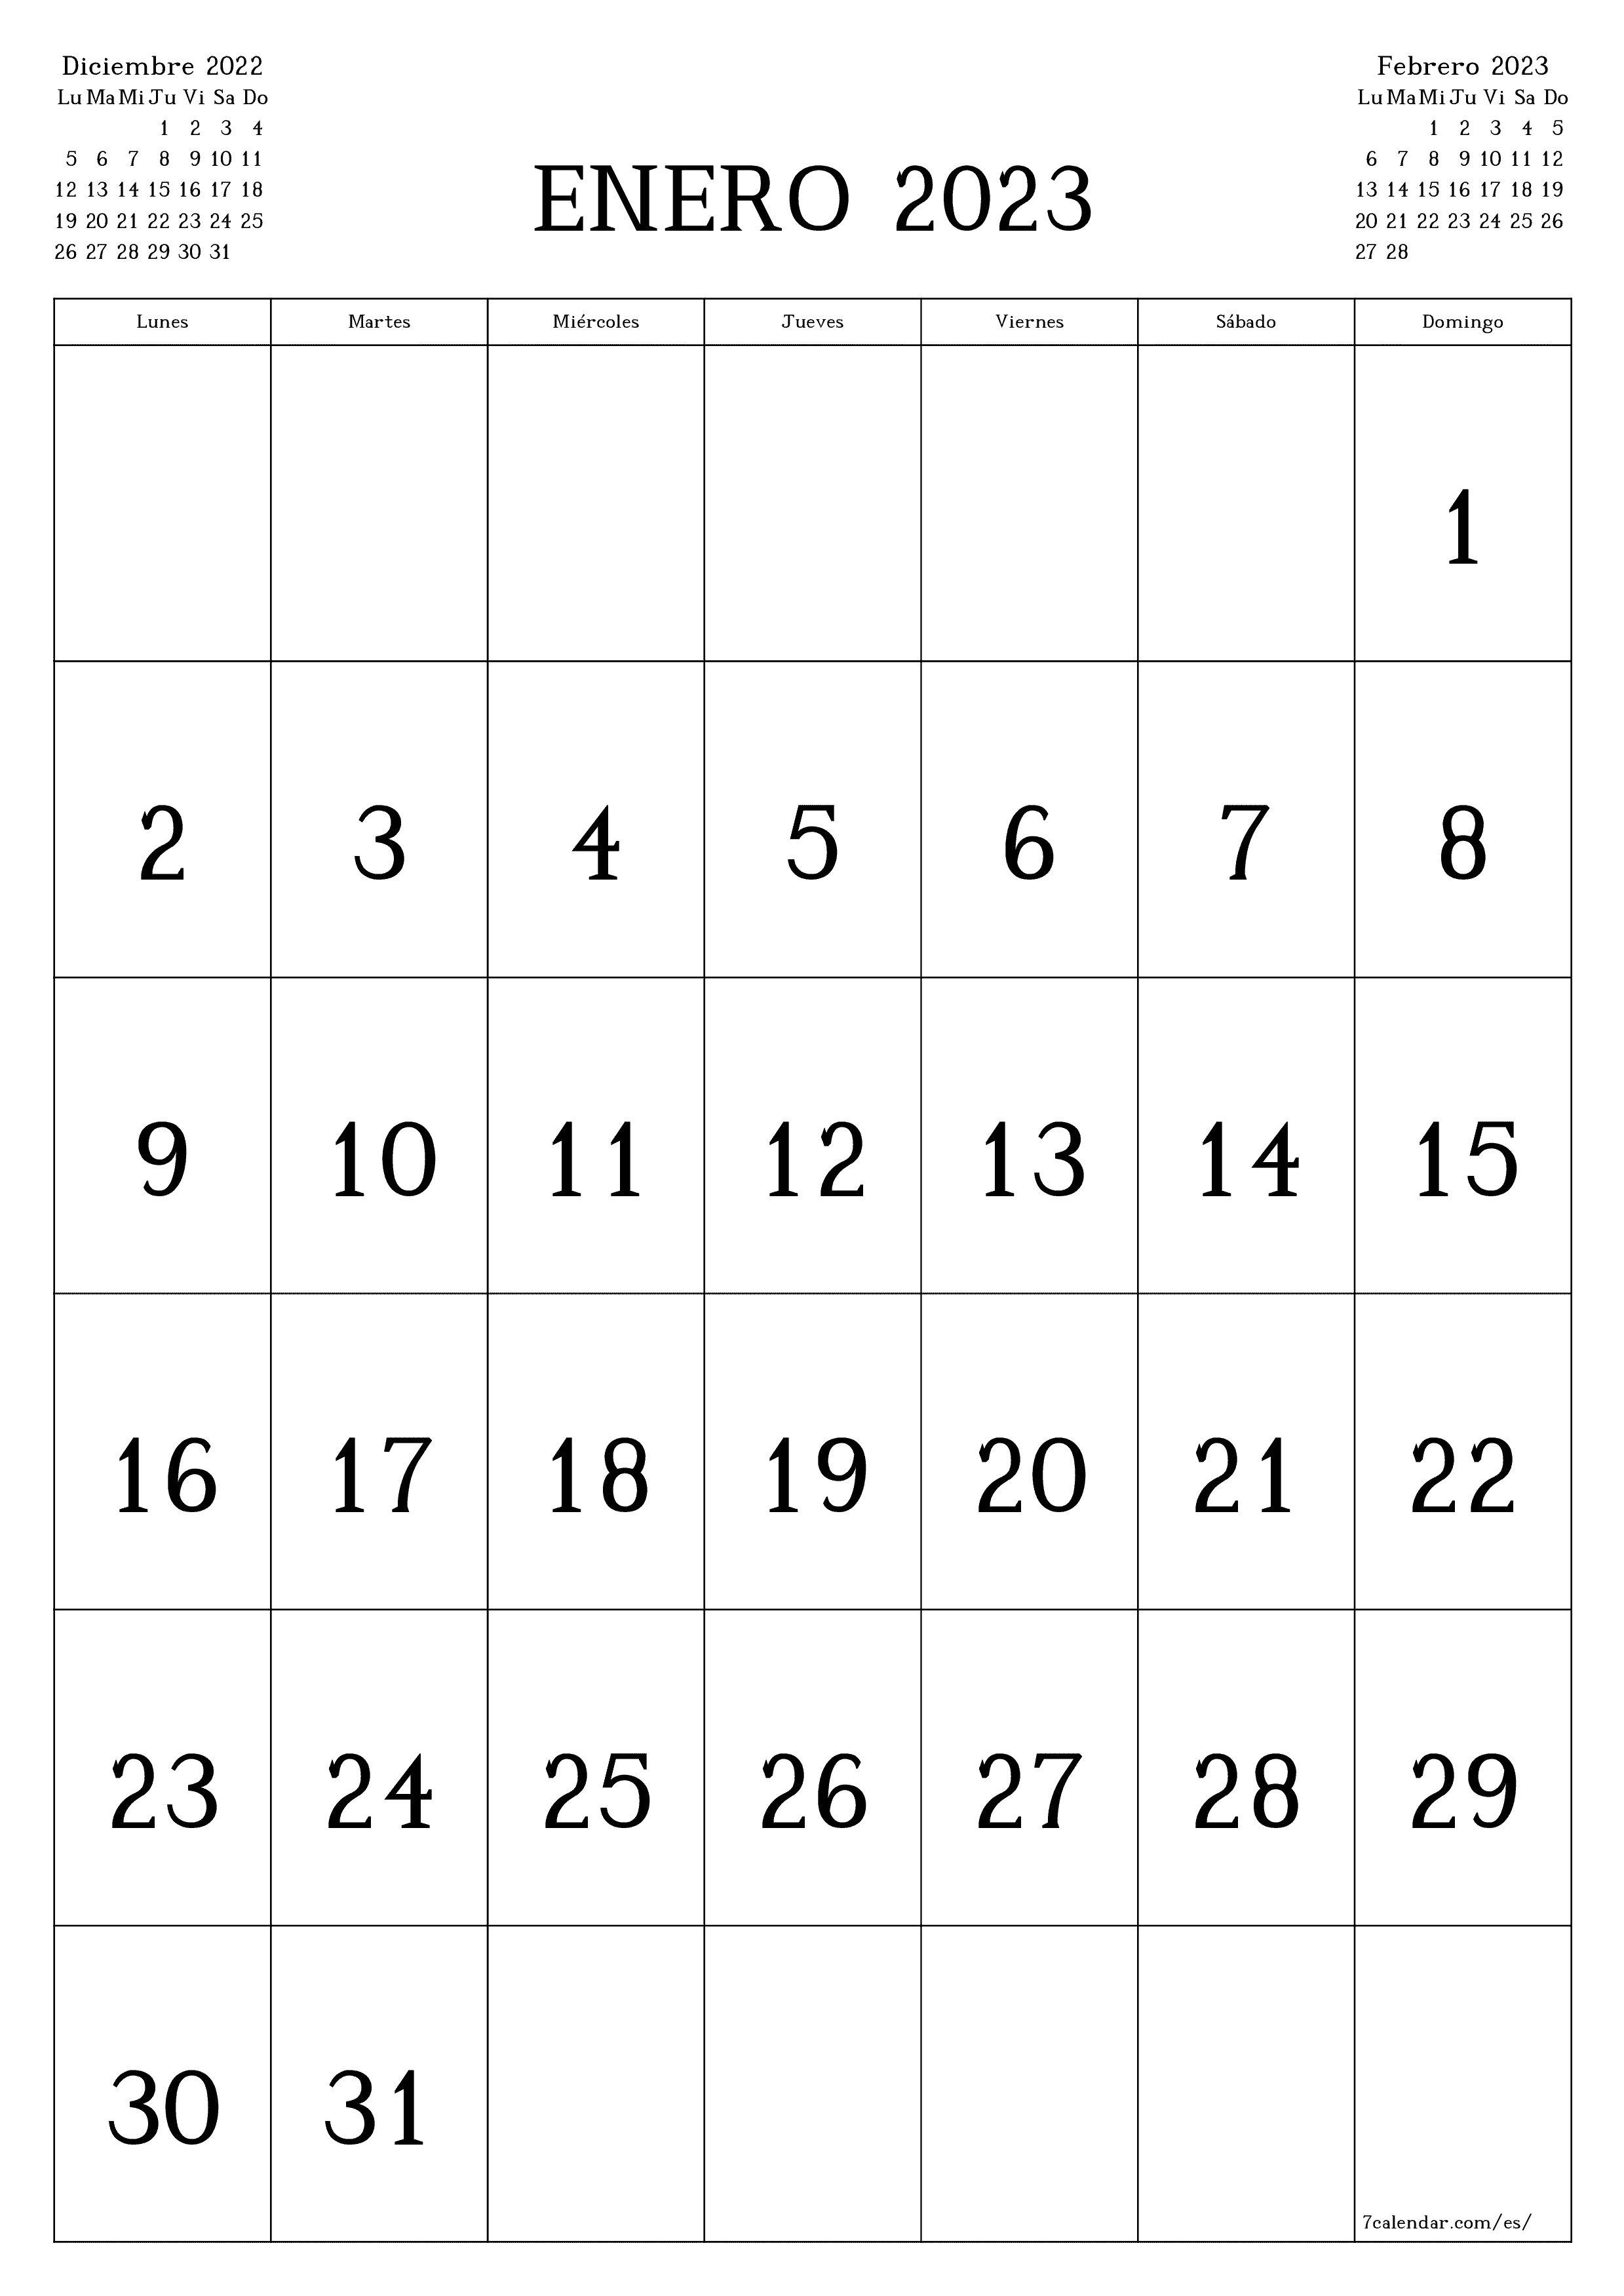 Calendario 2023 Por Mes Calendarios y planificadores imprimibles para el mes Enero 2023 A4, A3 a  PDF y PNG - 7calendar